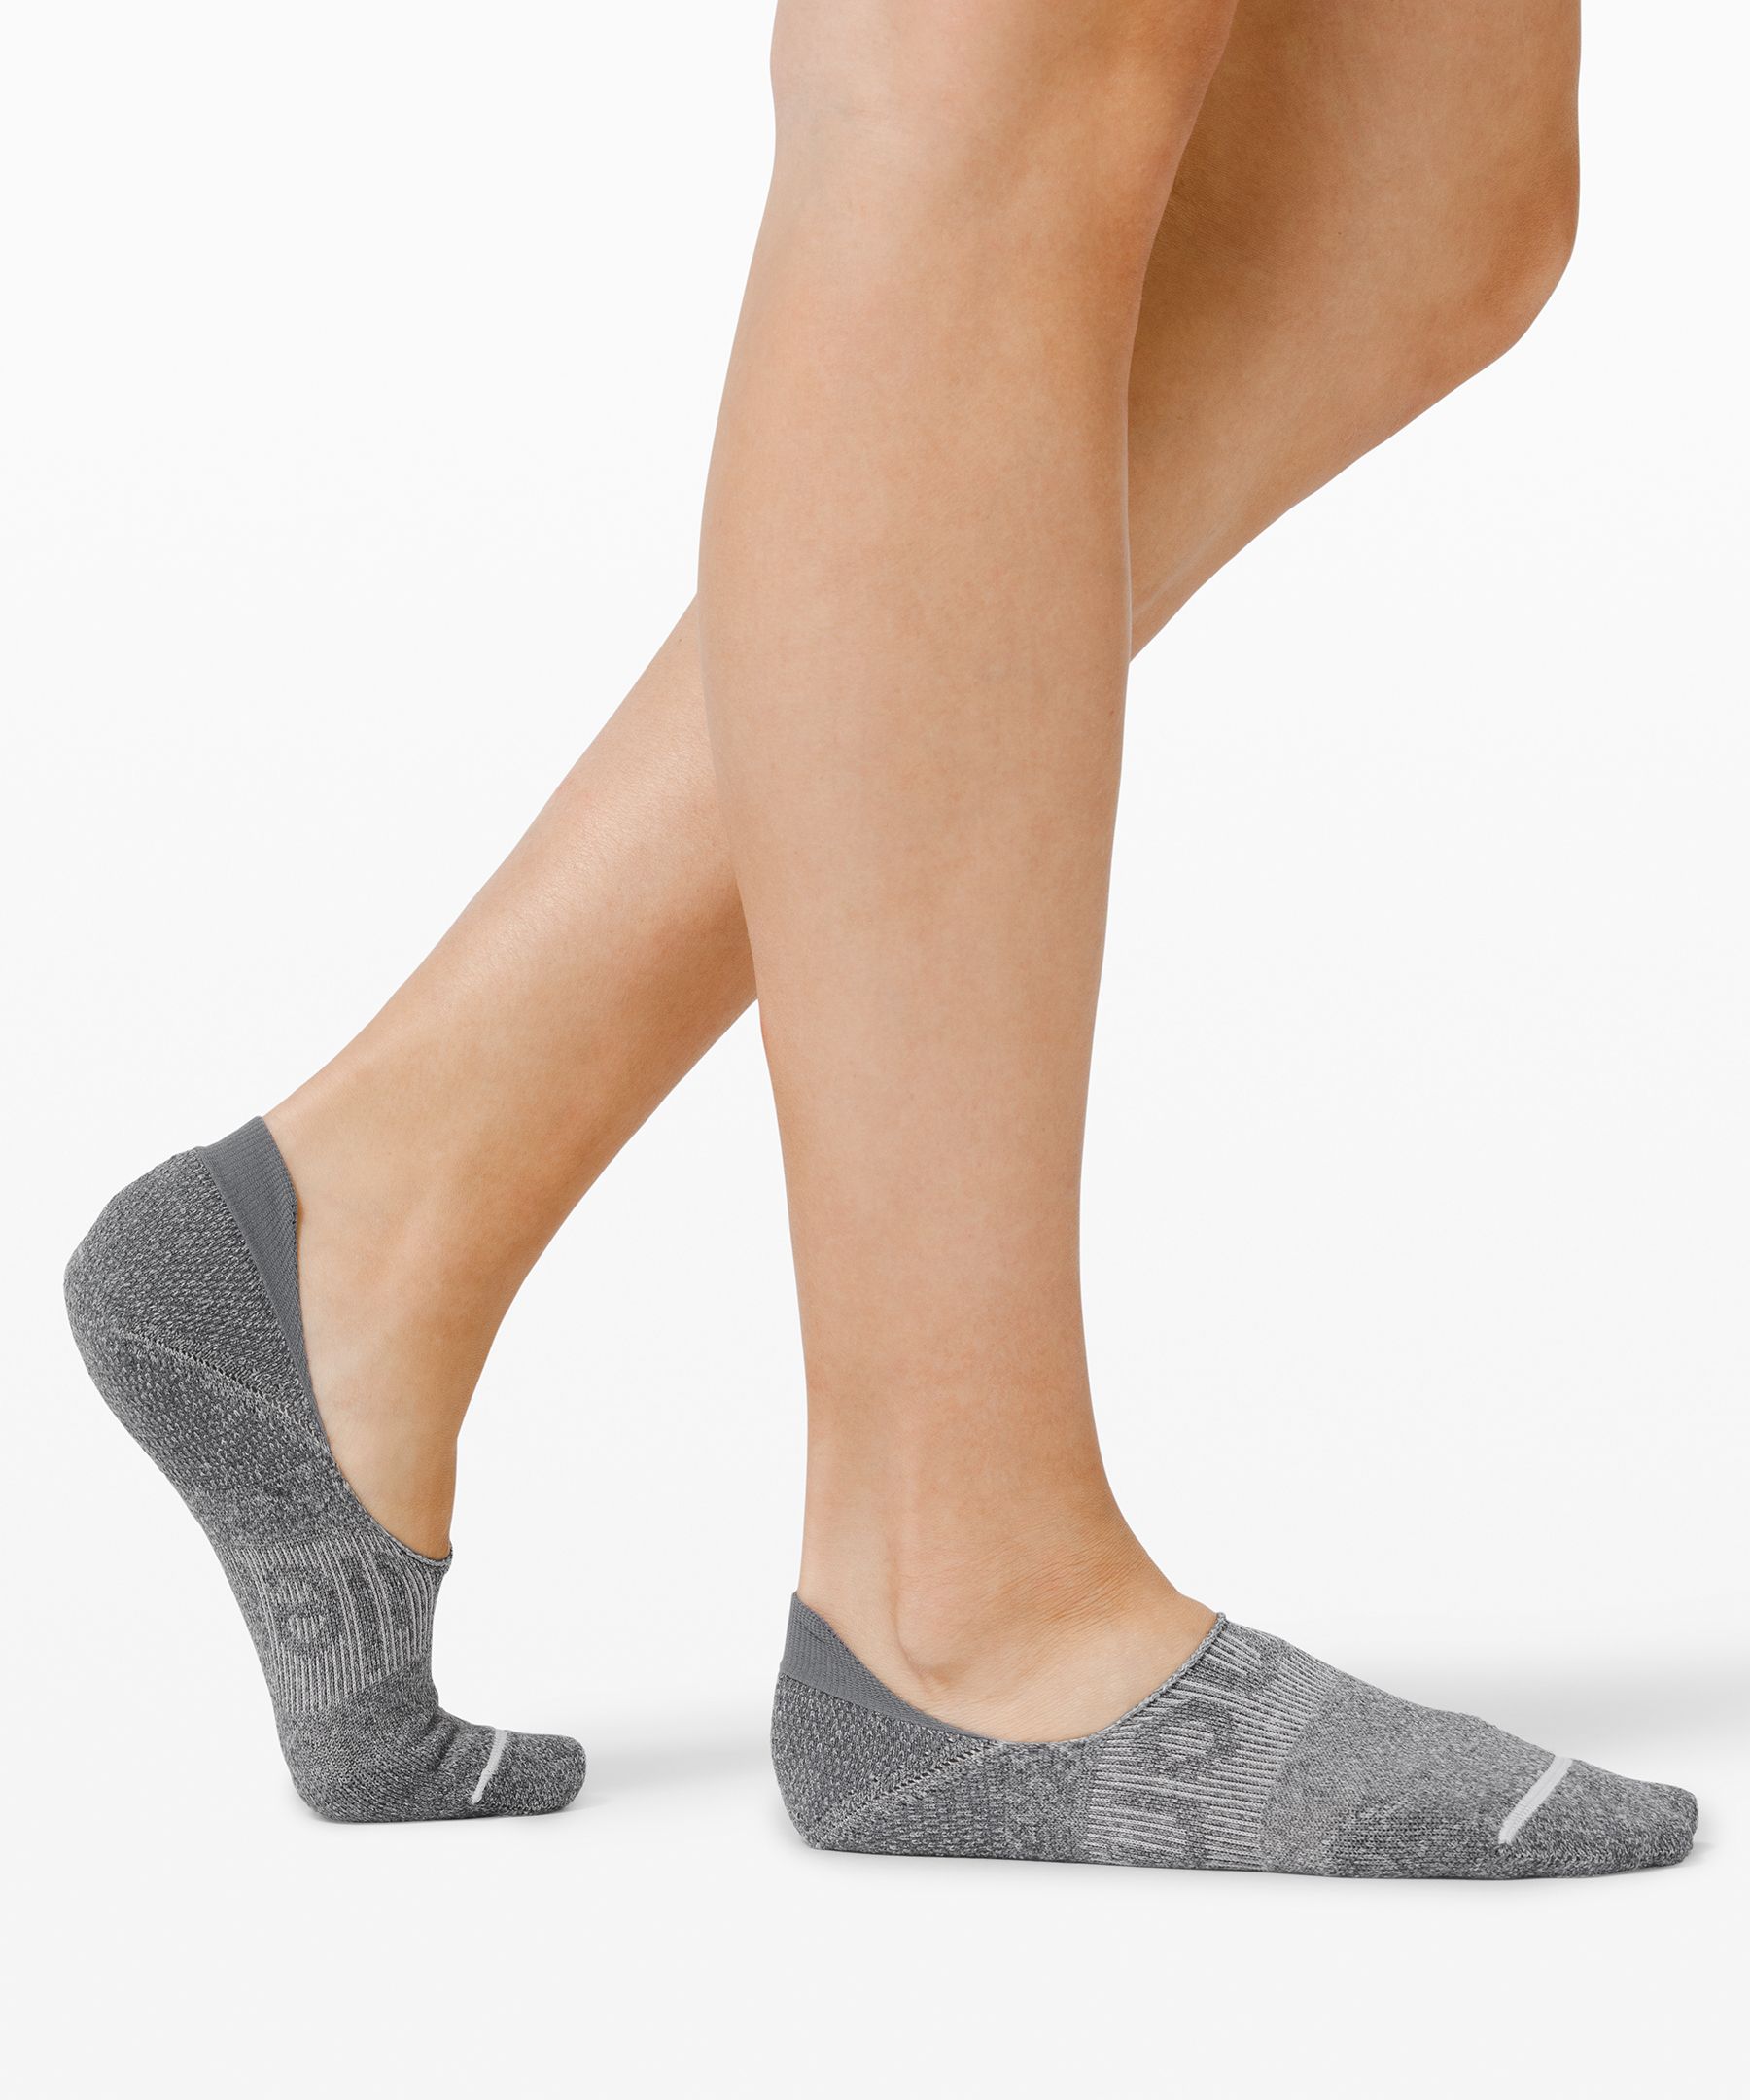 lululemon socks